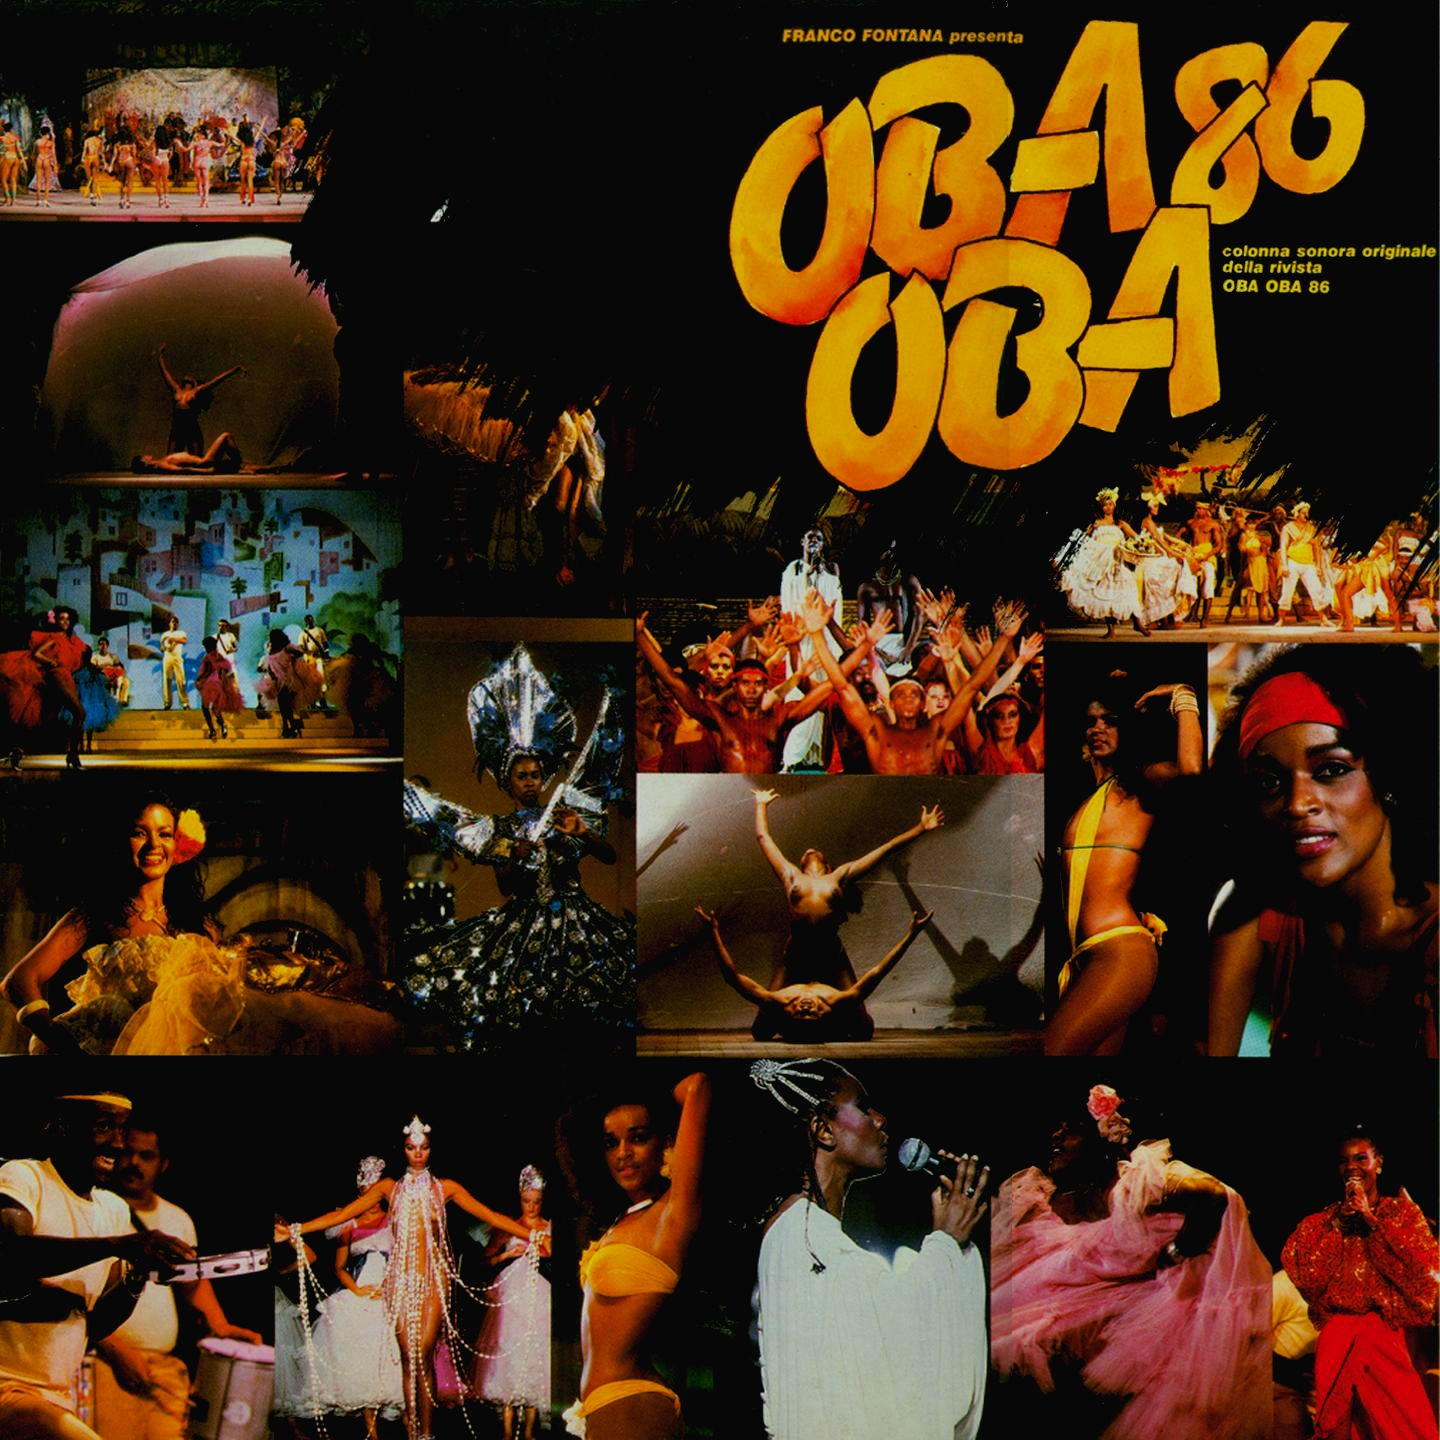 Franco Fontana presenta: Oba Oba 86 (Colonna sonora originale della rivista)